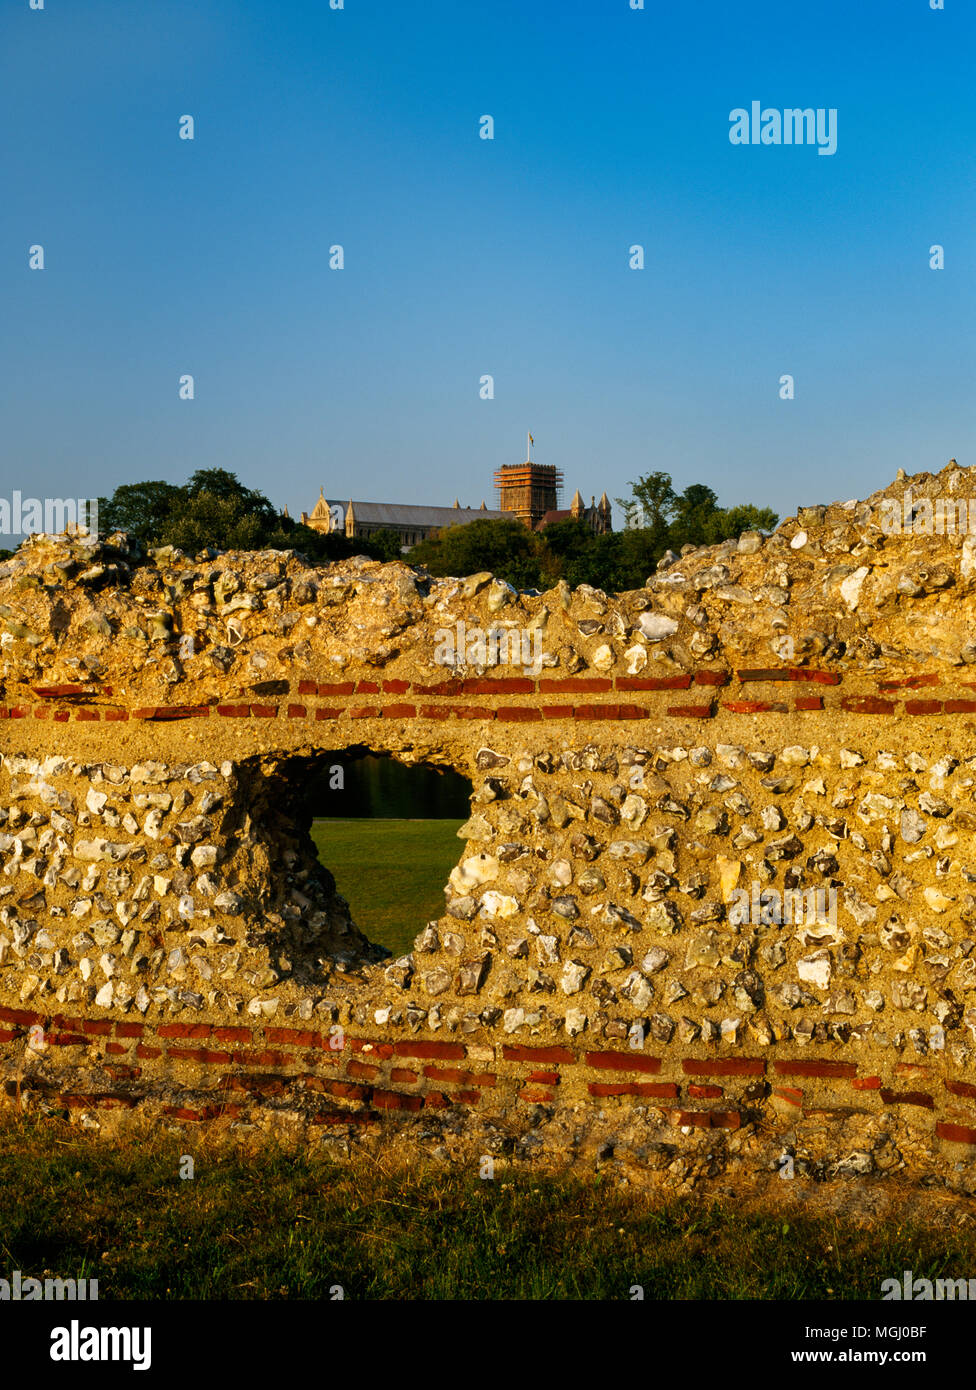 Voir l'E de la partie des deux milles de long mur romain AD265-70 construit pour défendre la ville de Verulamium, England, UK. La Cathédrale de St Albans sur la colline à l'arrière. Banque D'Images